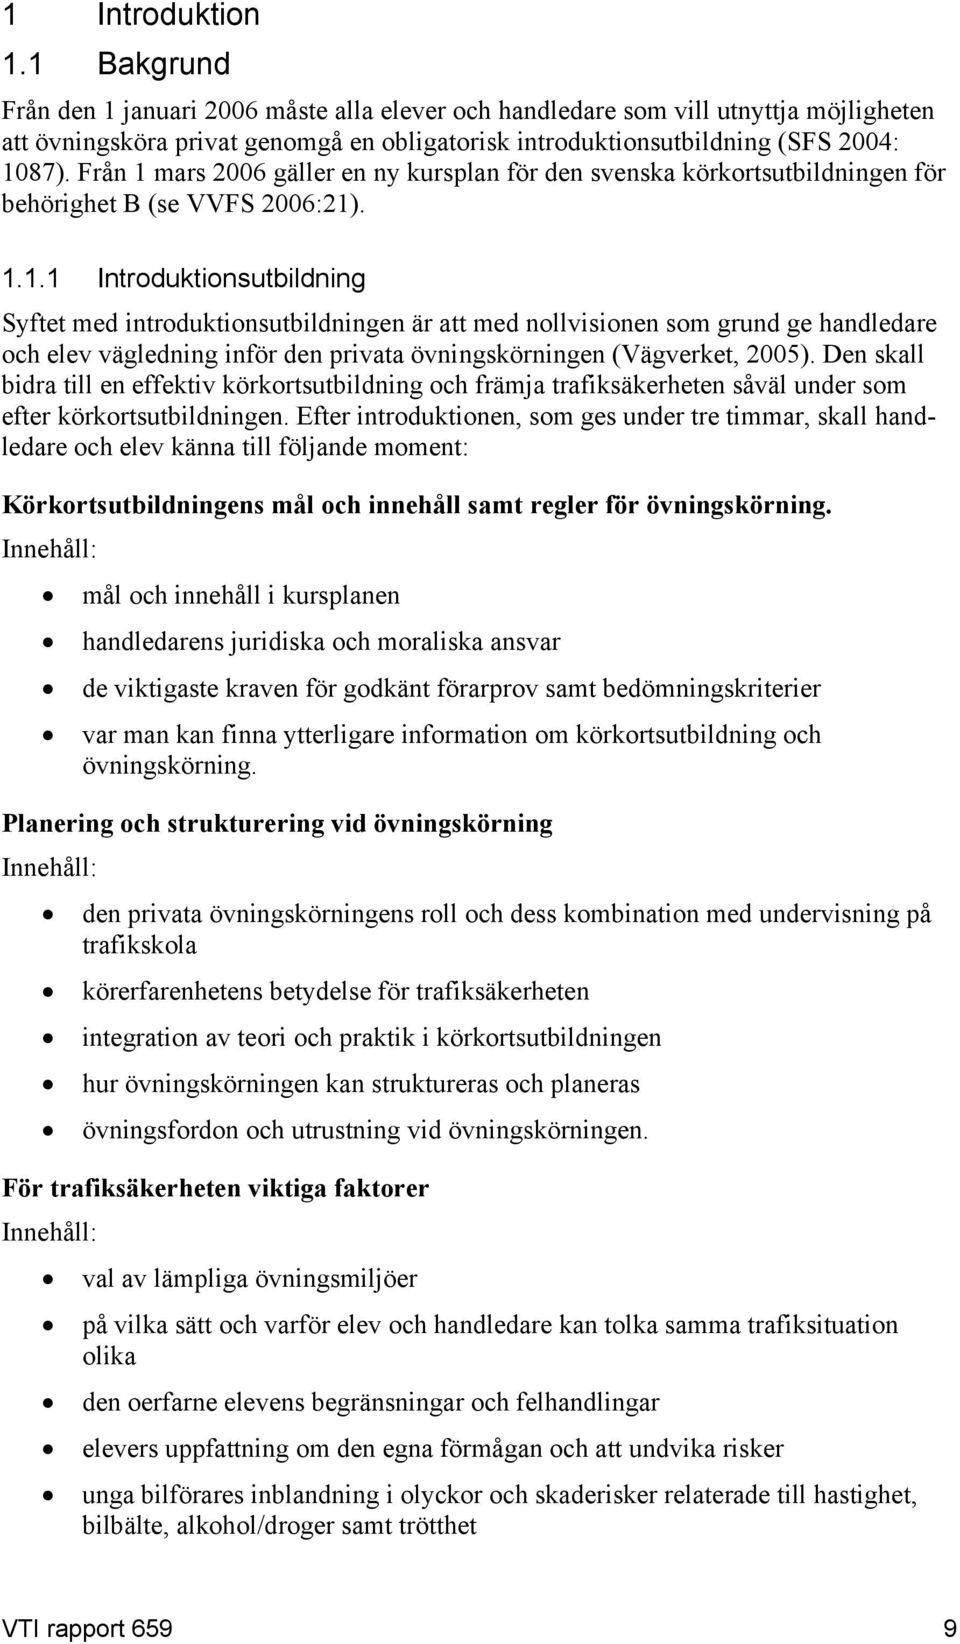 Från 1 mars 2006 gäller en ny kursplan för den svenska körkortsutbildningen för behörighet B (se VVFS 2006:21). 1.1.1 Introduktionsutbildning Syftet med introduktionsutbildningen är att med nollvisionen som grund ge handledare och elev vägledning inför den privata övningskörningen (Vägverket, 2005).